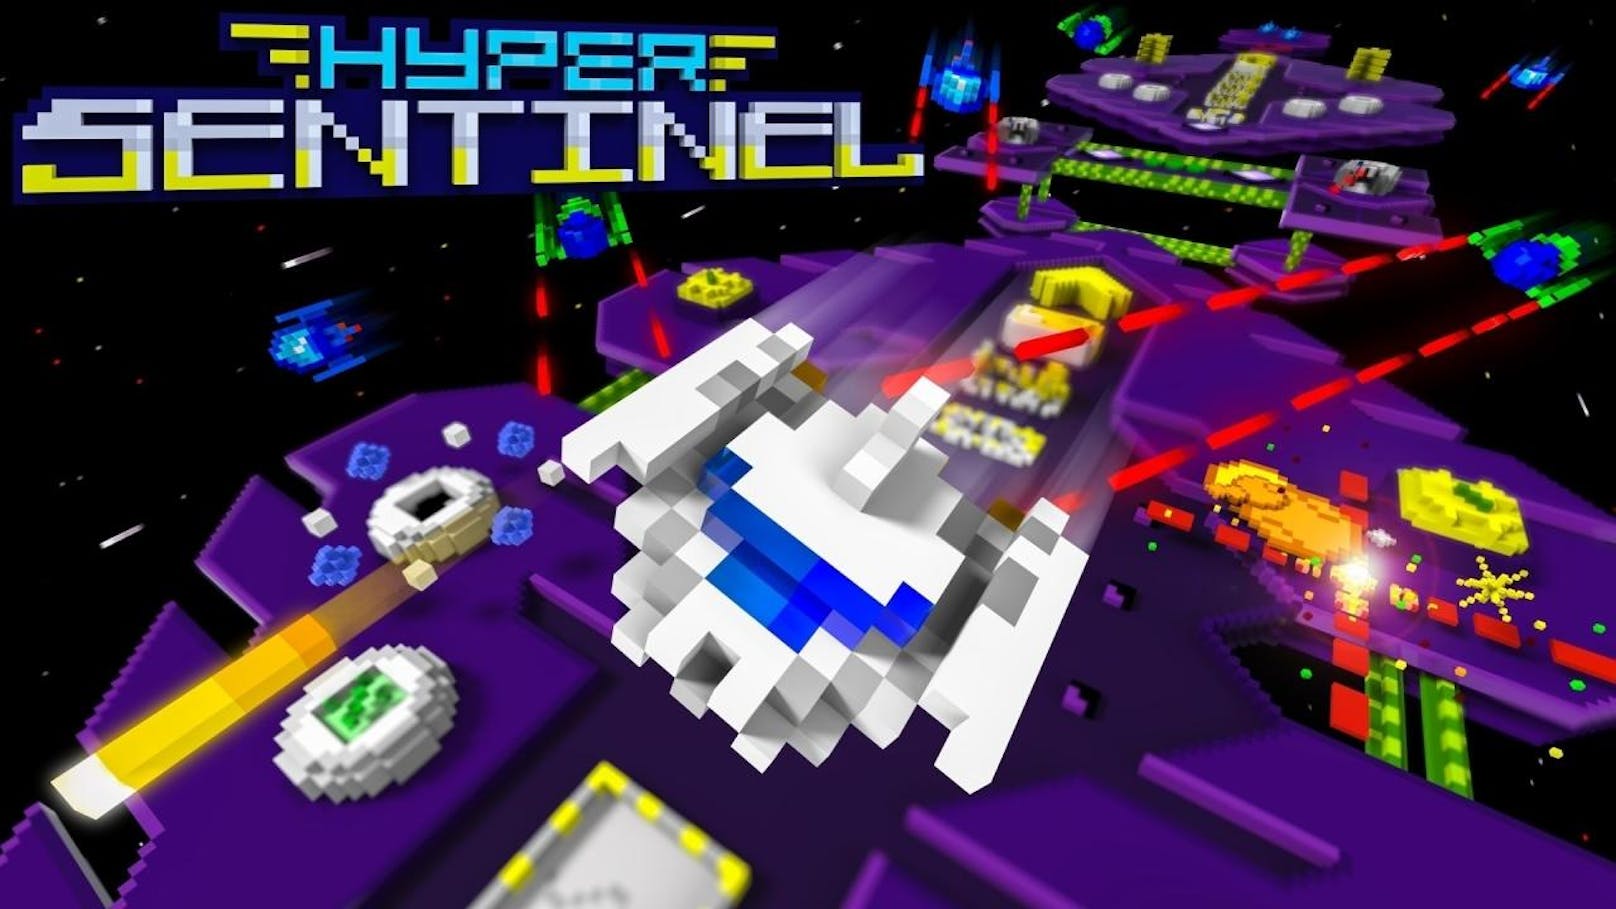 Der Retro-inspirierte Pixel-Arcade-Shooter Hyper Sentinel bringt zwar etwas aufpoliertes Gameplay, Musik, Effekte und Grafik (wenngleich 4K mit 60 Frames pro Sekunde) sind aber stark Arcade-orientiert.